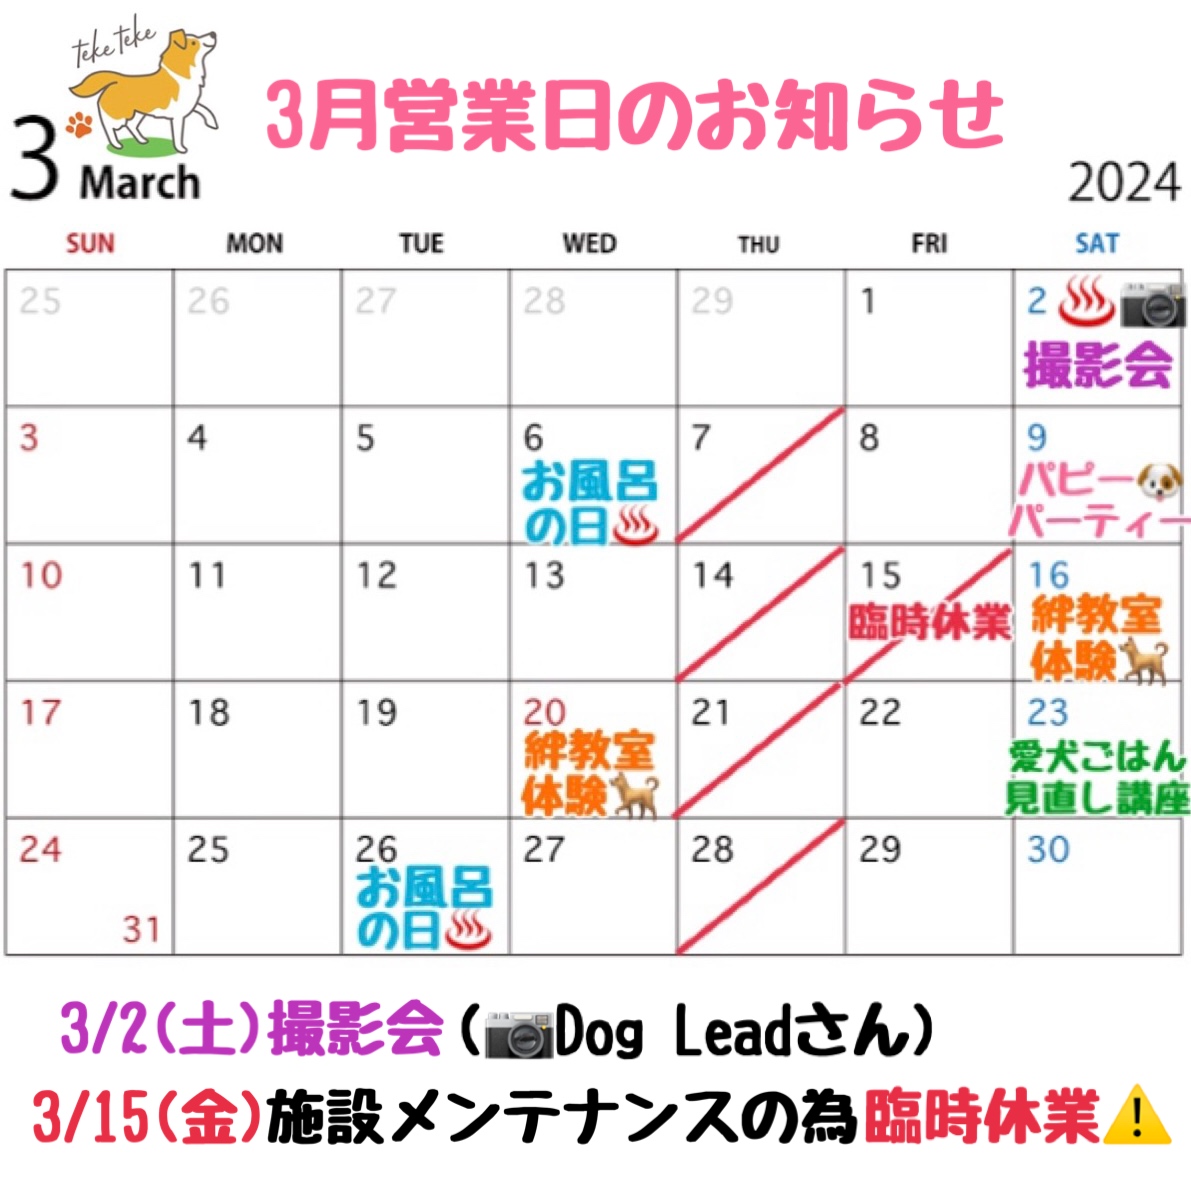 3月営業日カレンダーのお知らせです🗓